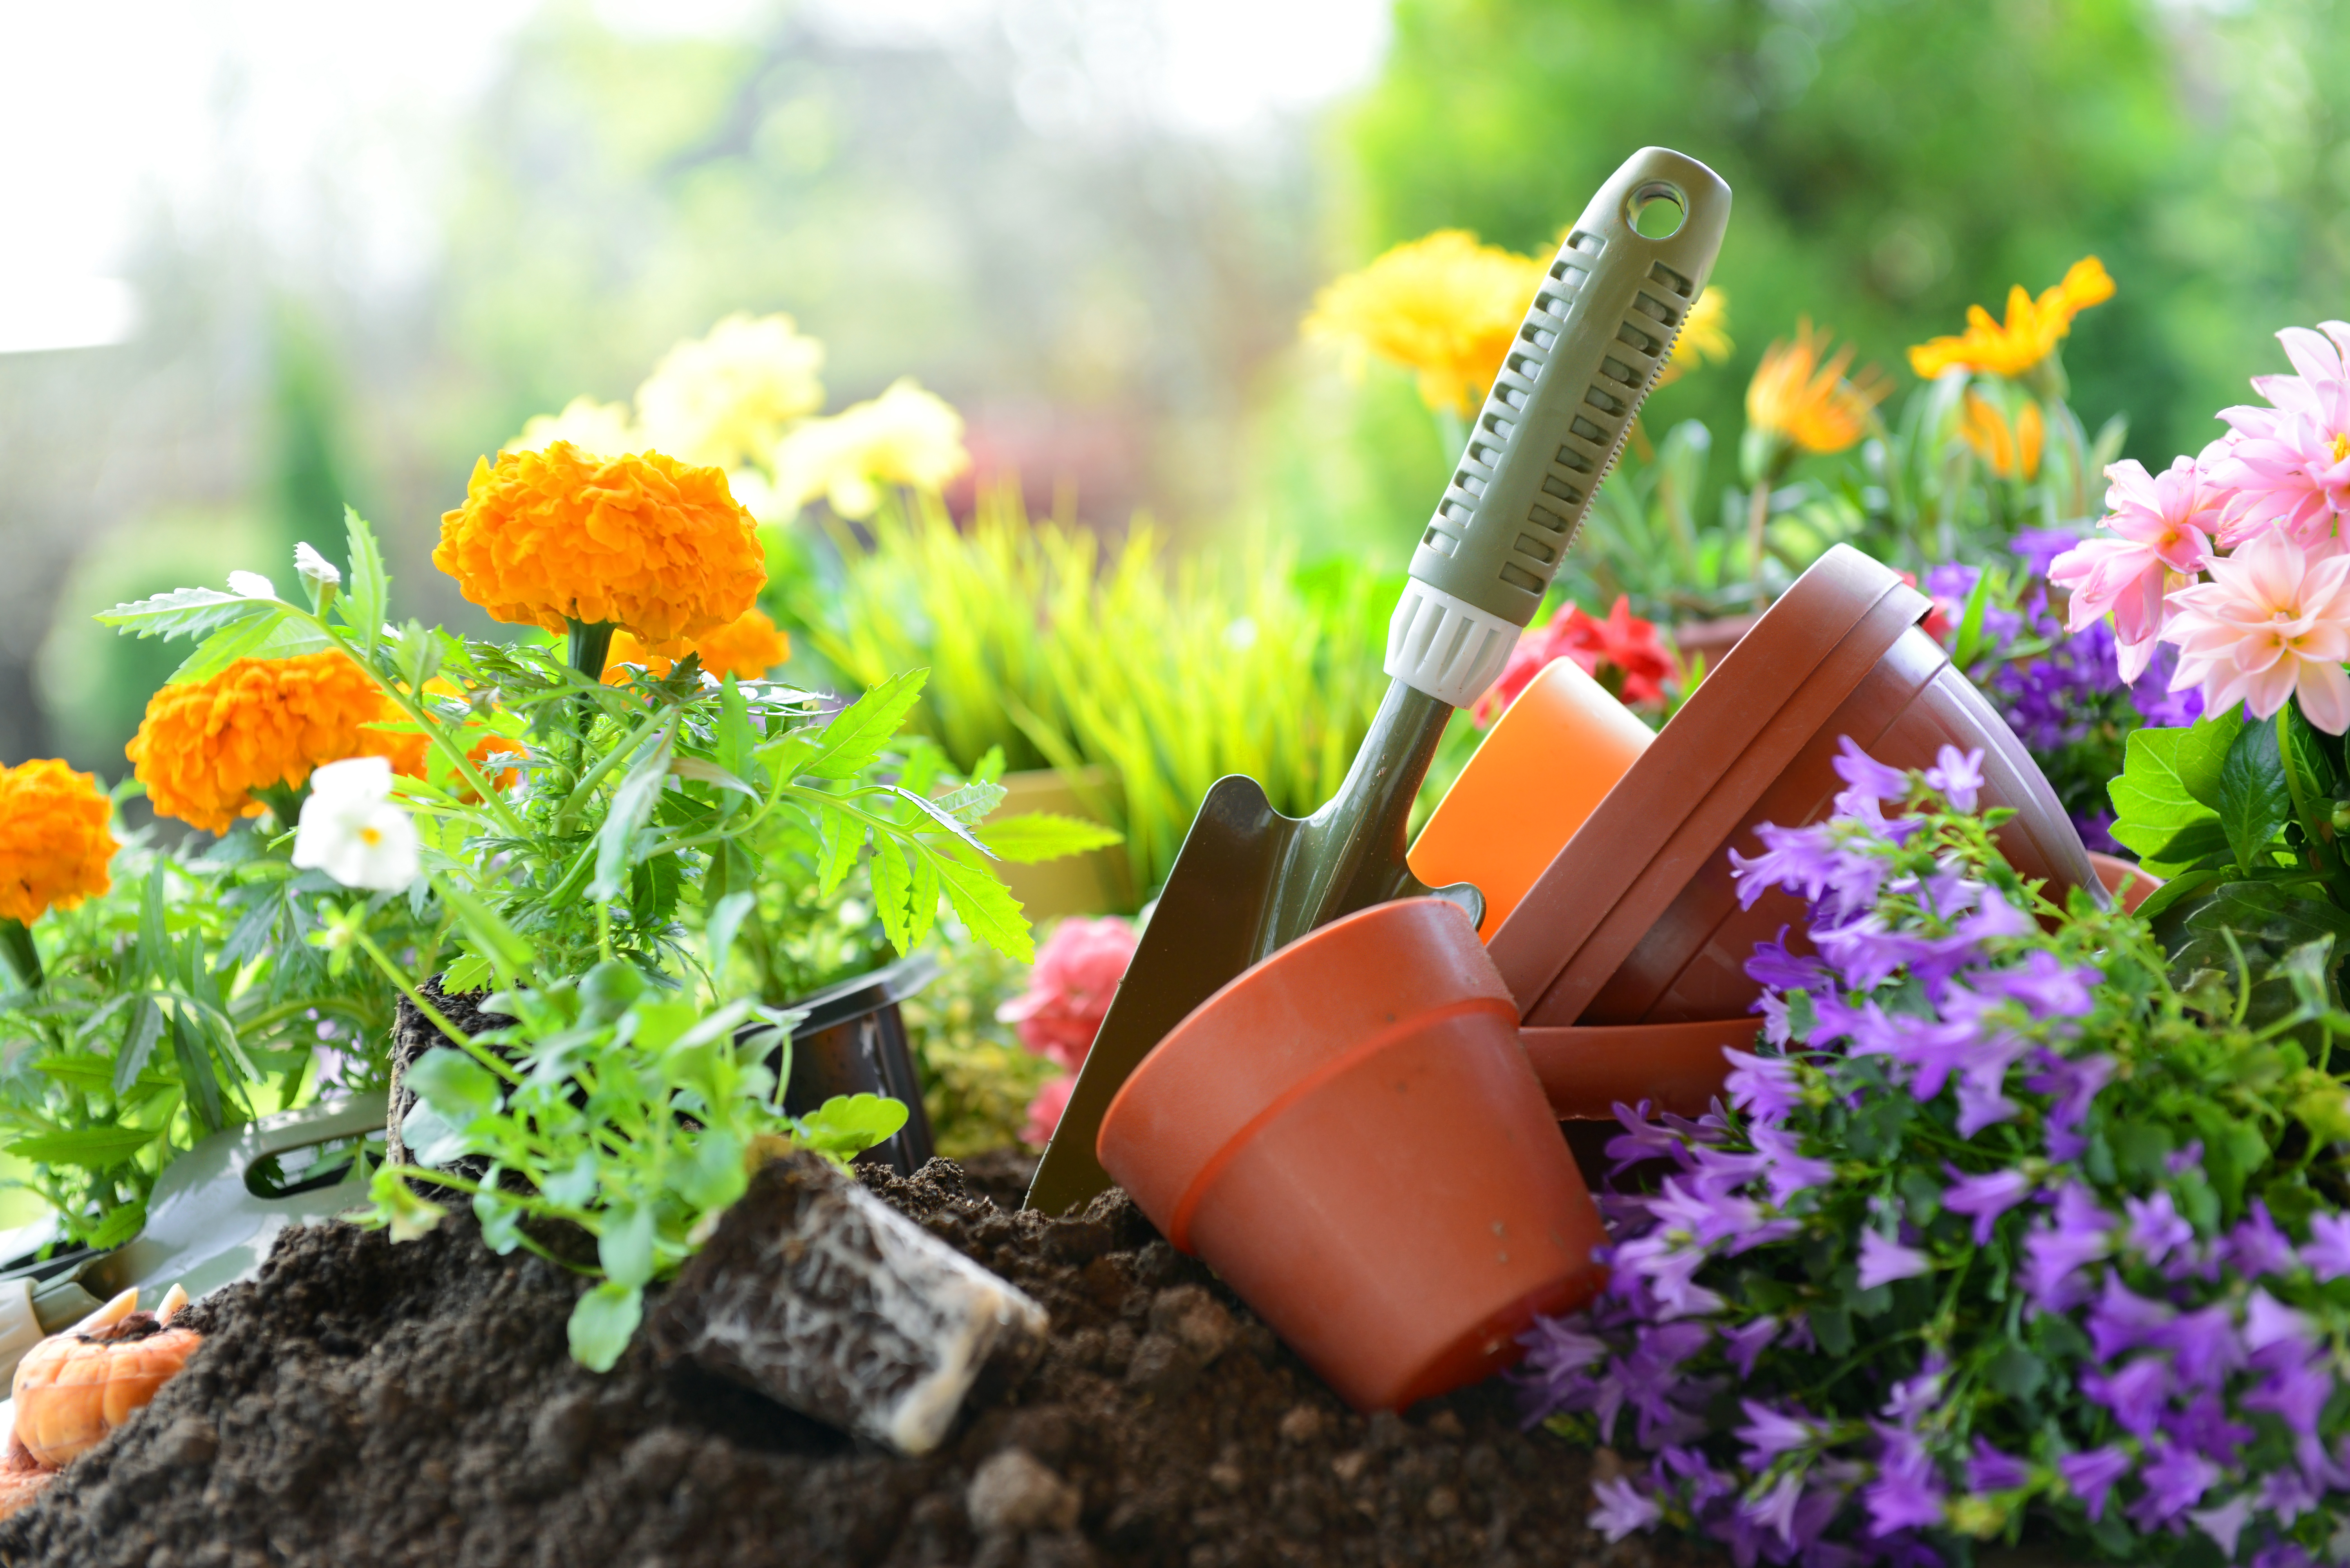 <p><strong>Градинарство</strong></p>

<p>Според експерти, градинарството и друг физически труд на чист въздух укрепват тялото не по-лошо от фитнеса. Така че, когато се занимавате с градинарство, садите или копаете картофи дори - &nbsp;наистина укрепвате тялото си.</p>